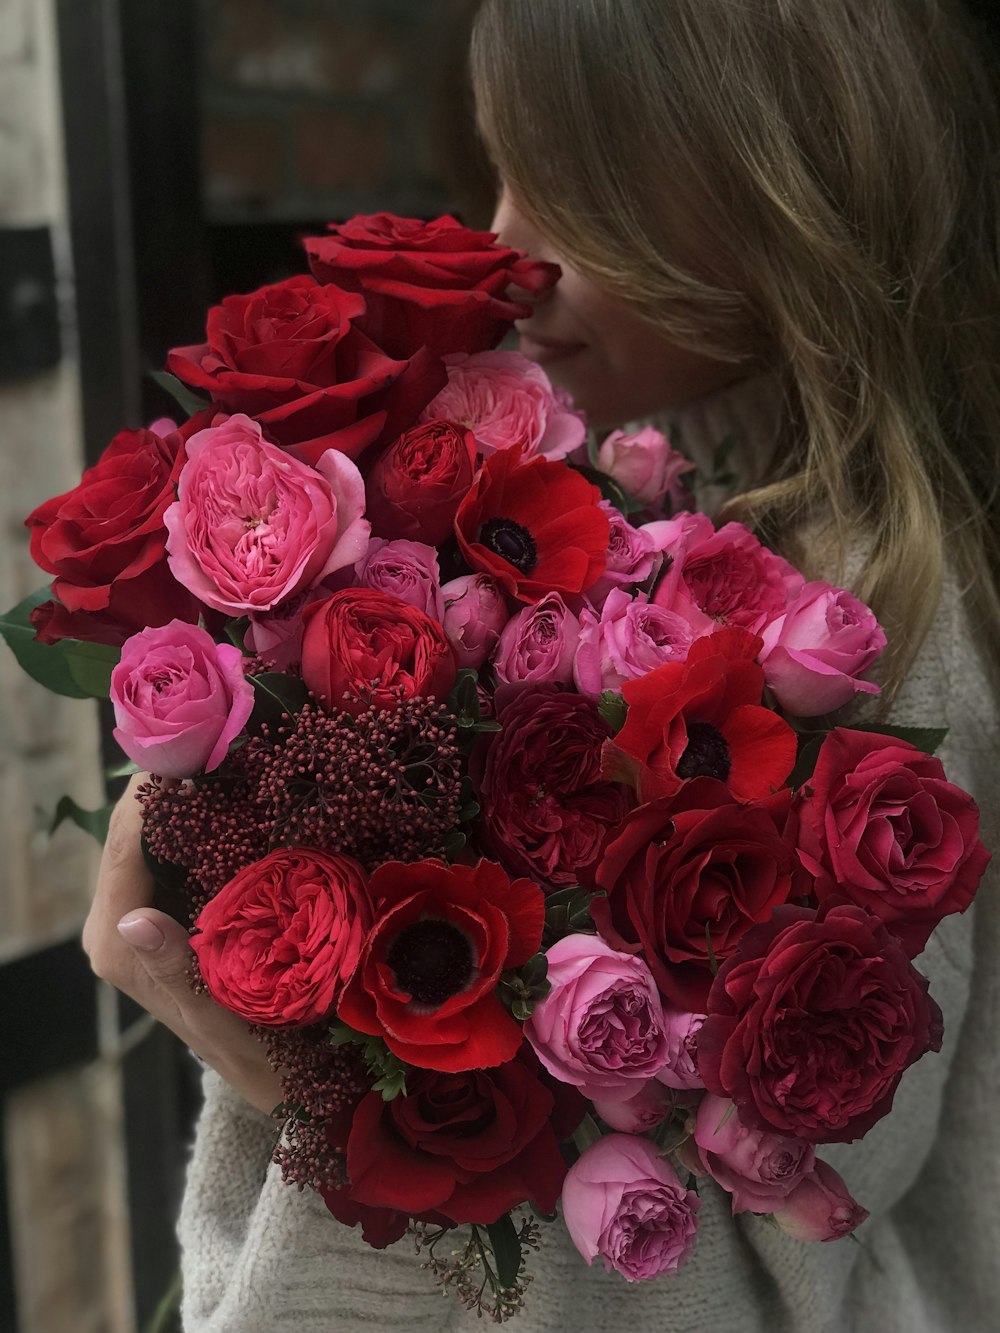 Flores de rosas rosas y rojas